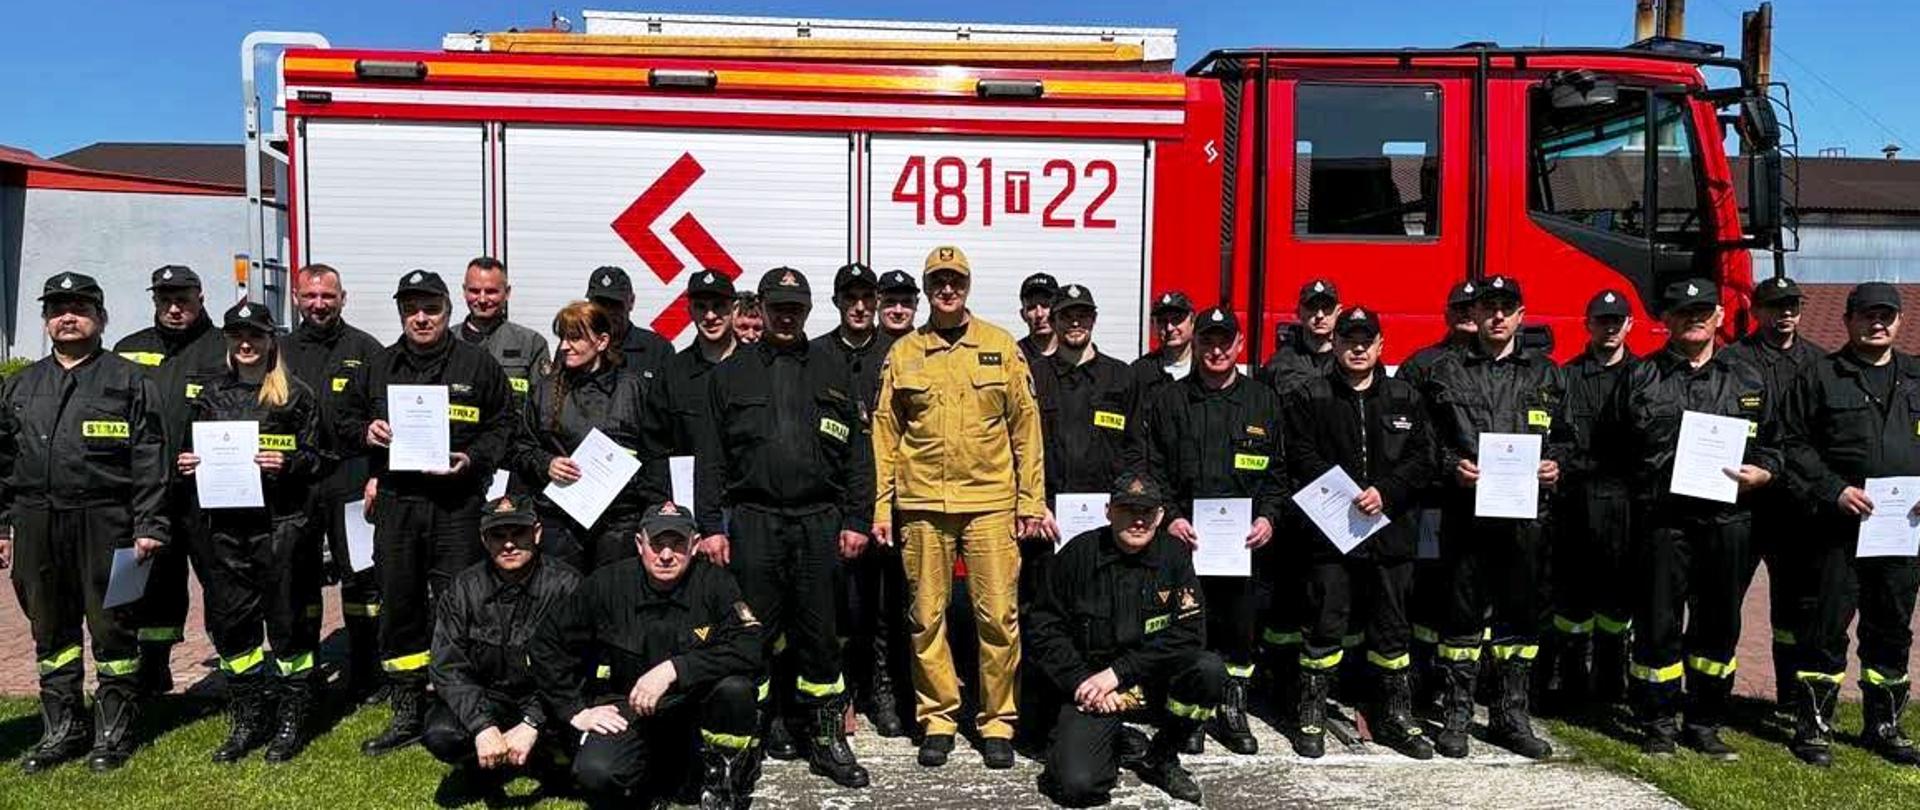 Grupowe zdjęcie osób które ukończyły szkolenie wraz z osobami egzaminującymi na tle samochodu gaśniczego JRG Skarżysko-Kamienna.